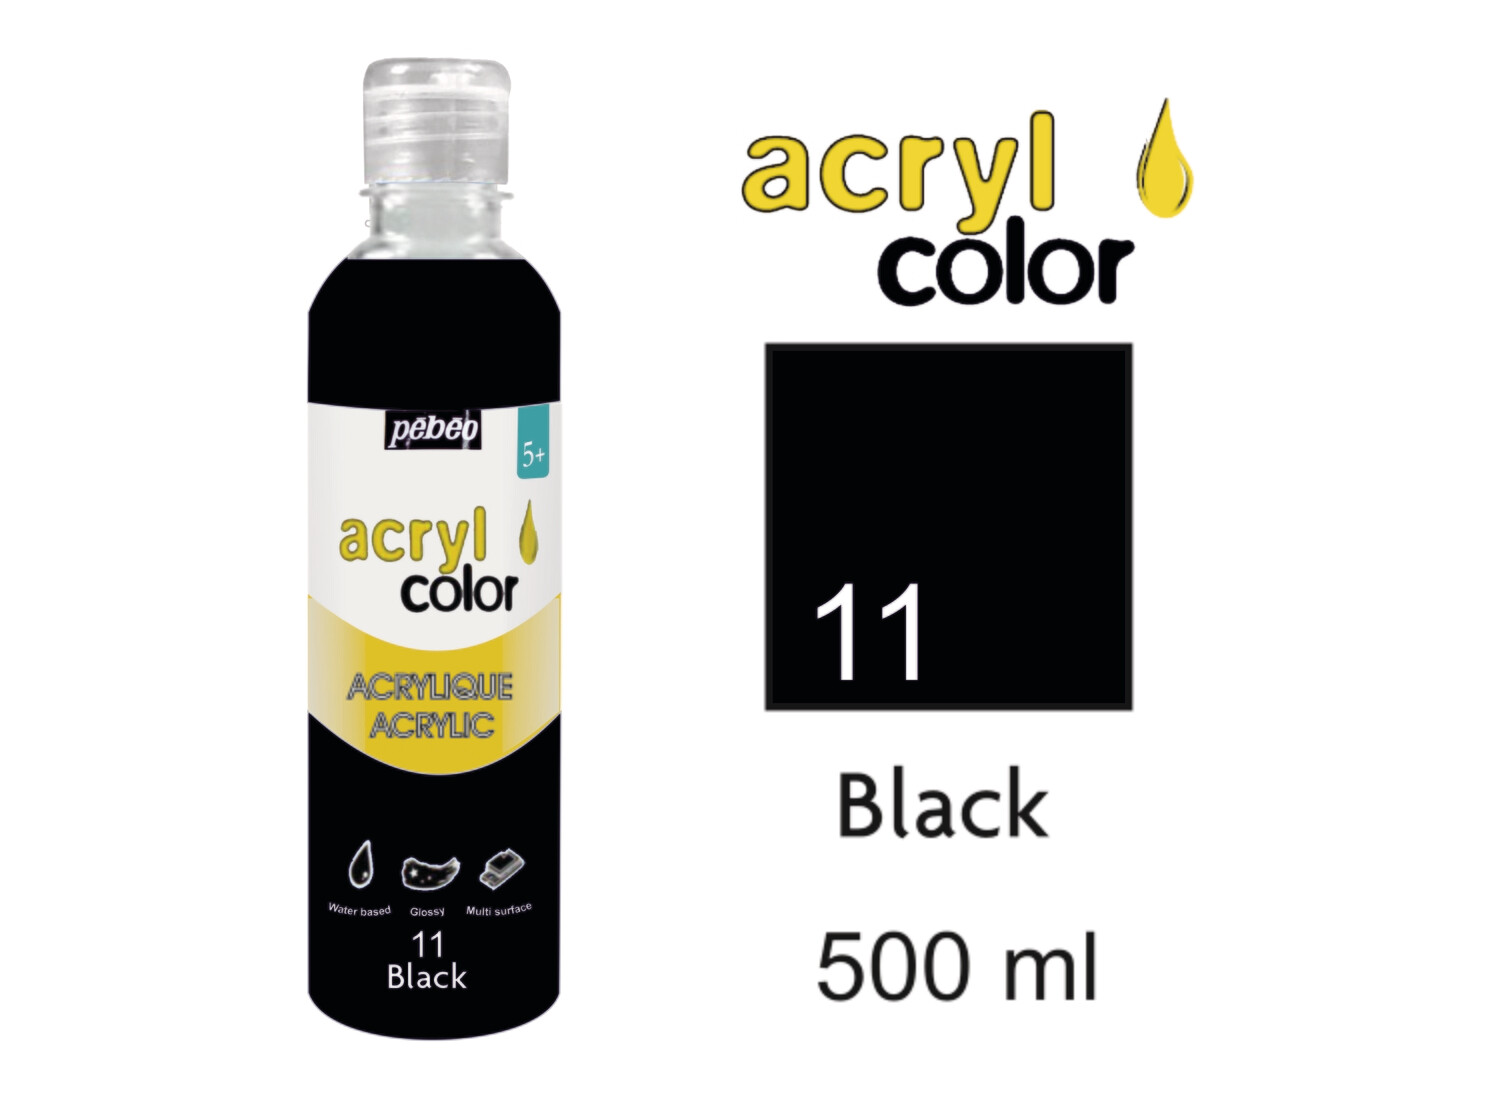 Acrylcolor Liquid Acrylic 500 ml, Black, No. 11